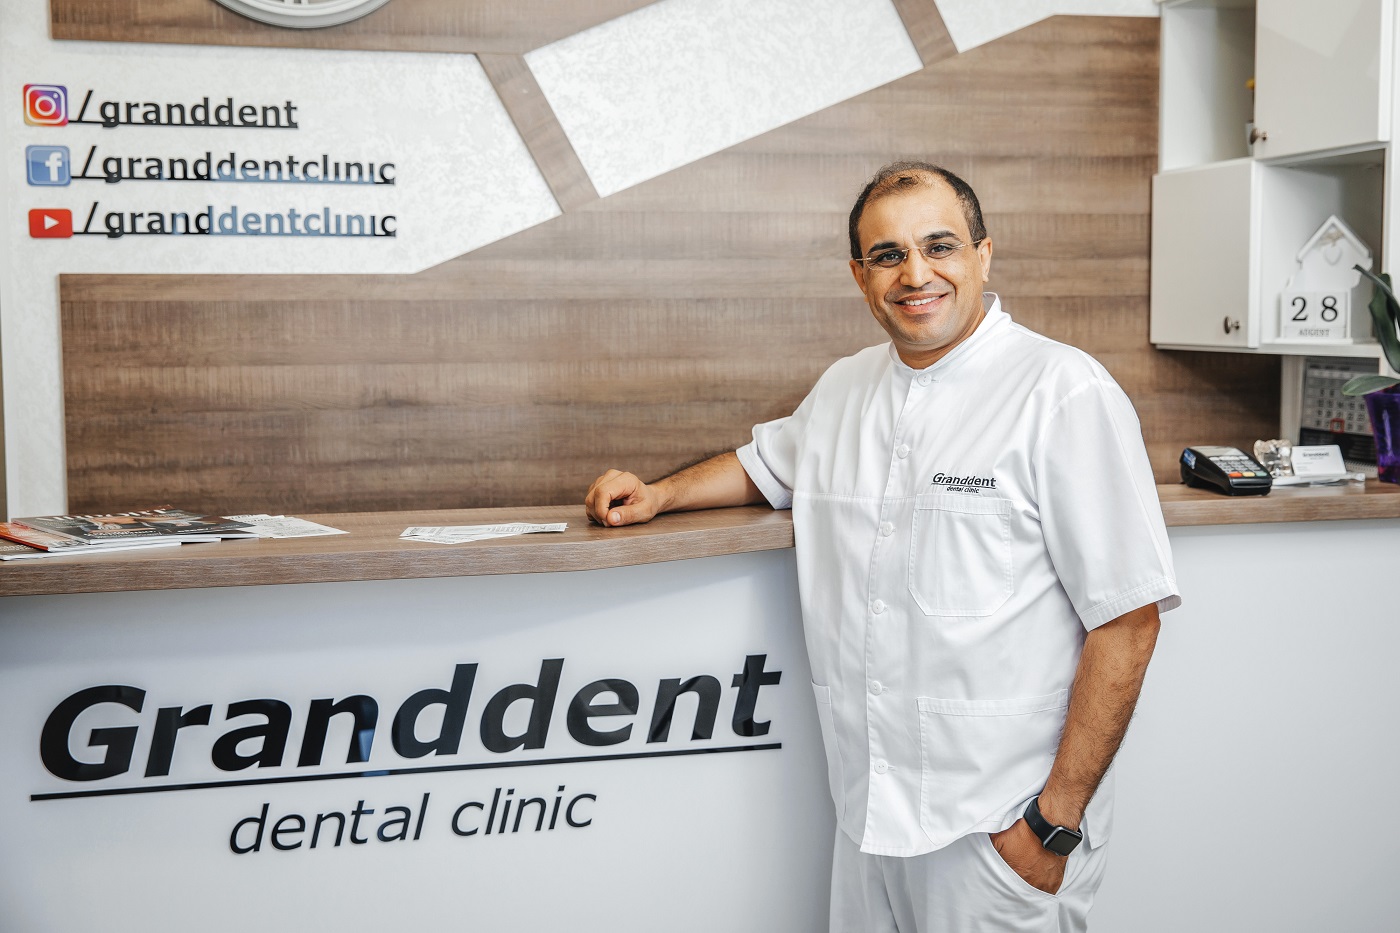 Главный врач стоматологической поликлиники Granddent